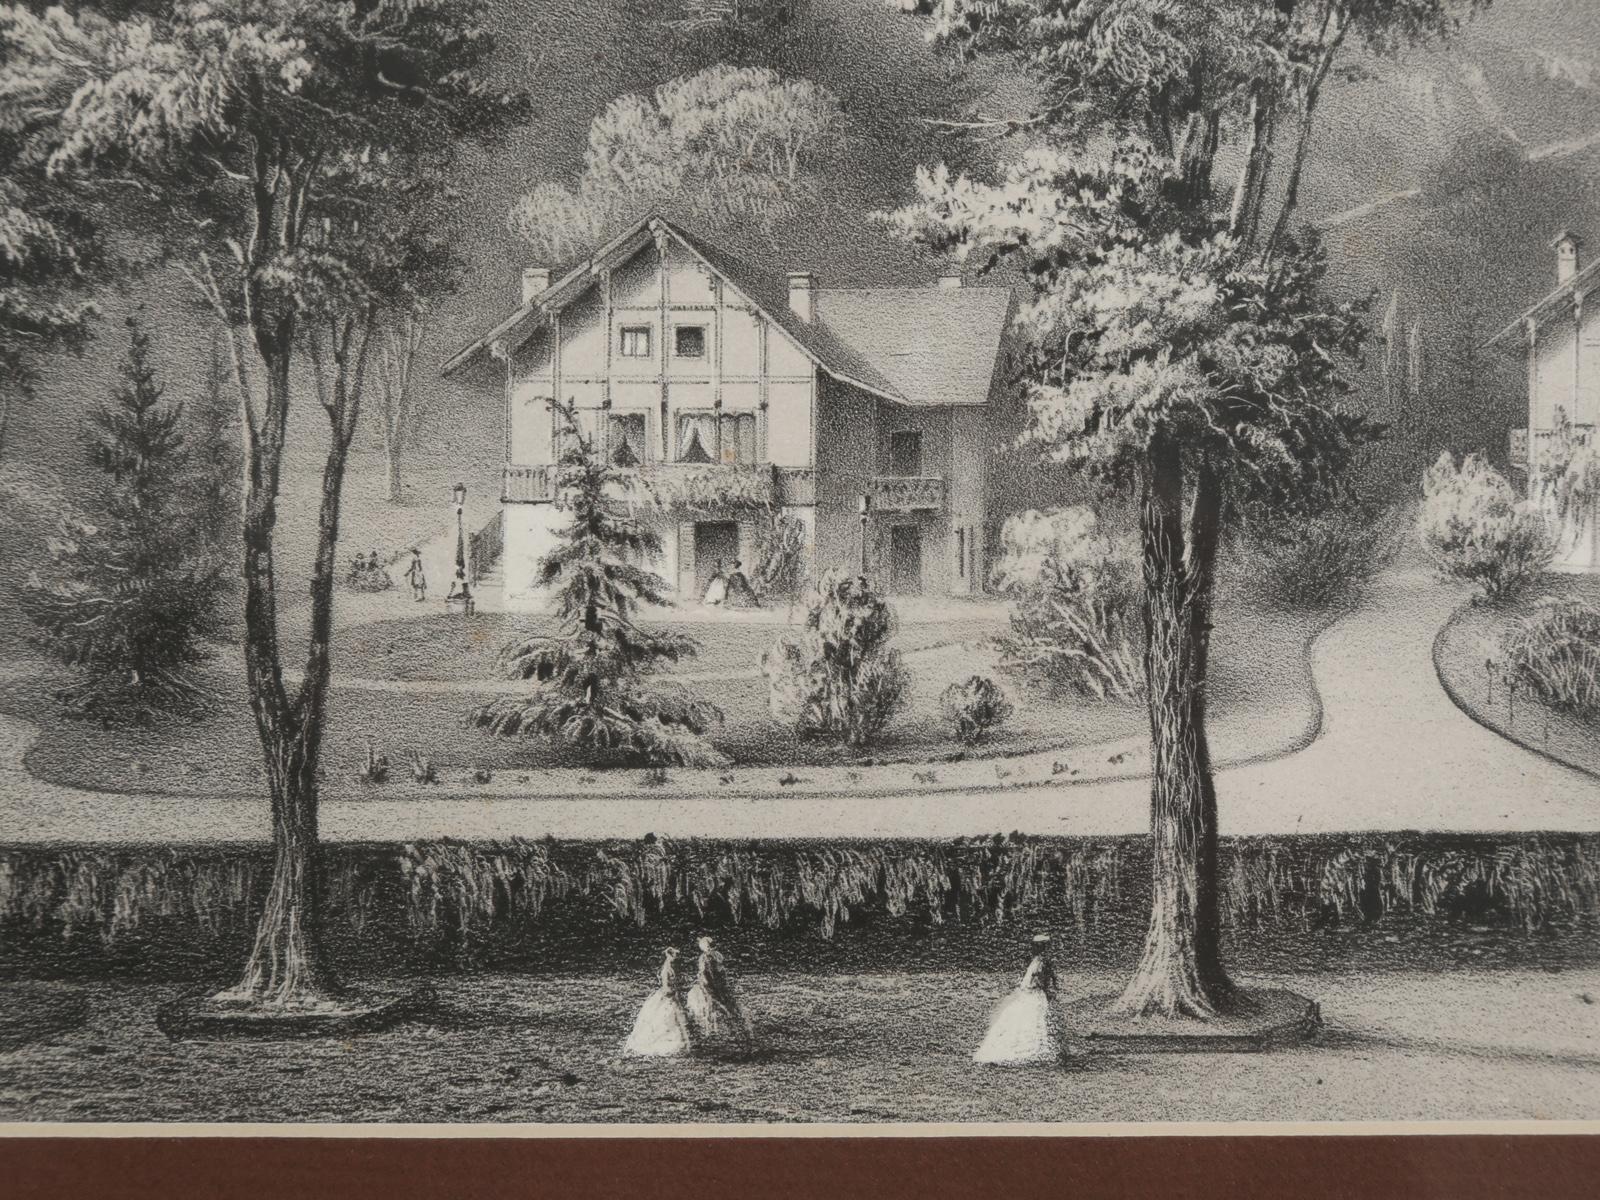 Title Vues Nouvelles or New Views, Black Forest Village Scene, circa 1800s 3